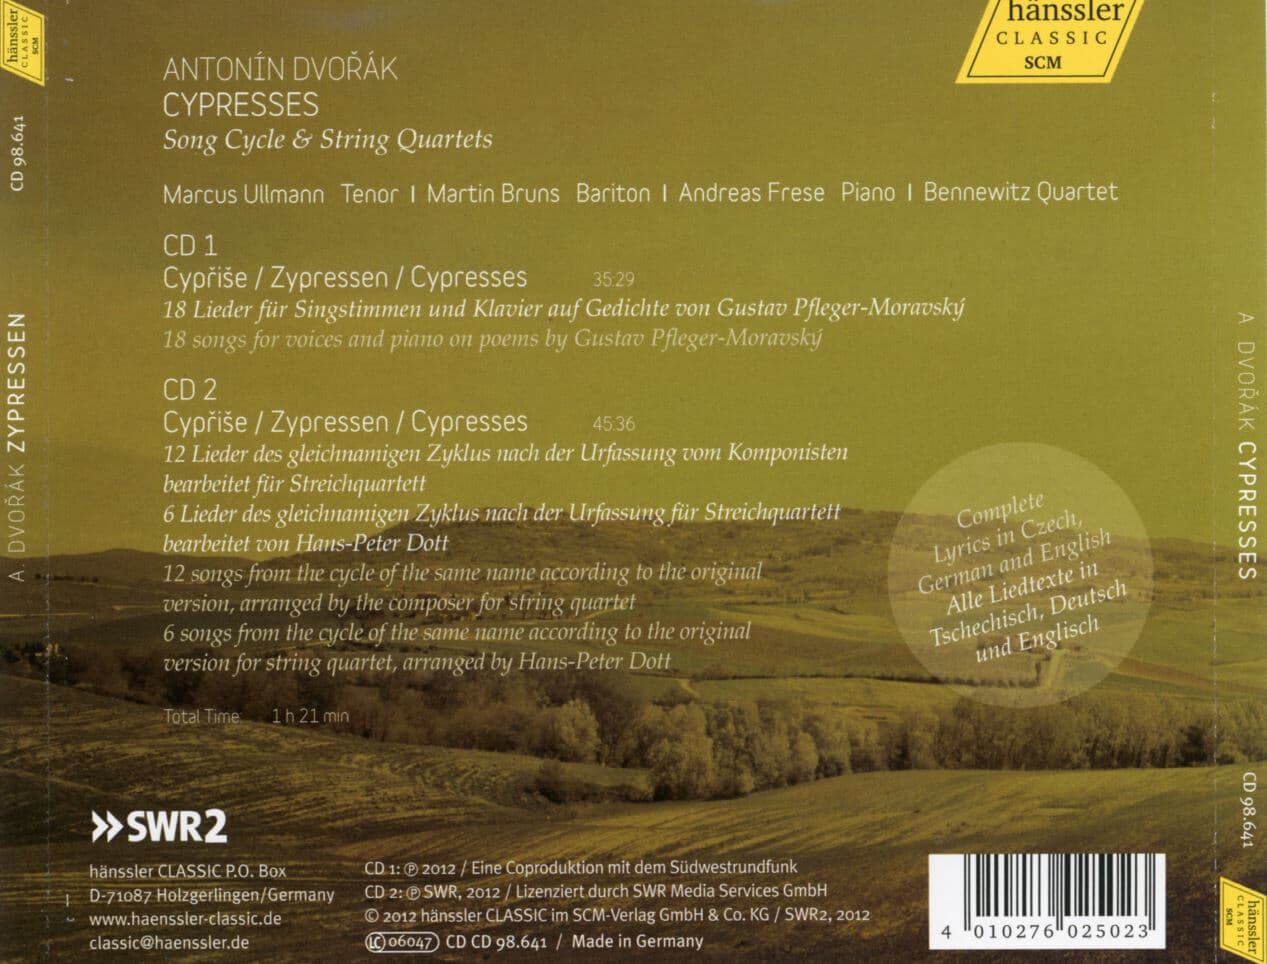 베네비츠 콰르텟 - Bennewitz Quartet - Dvorak Cypresses (Song Cycle & String Quartets) 2Cds [독일발매]